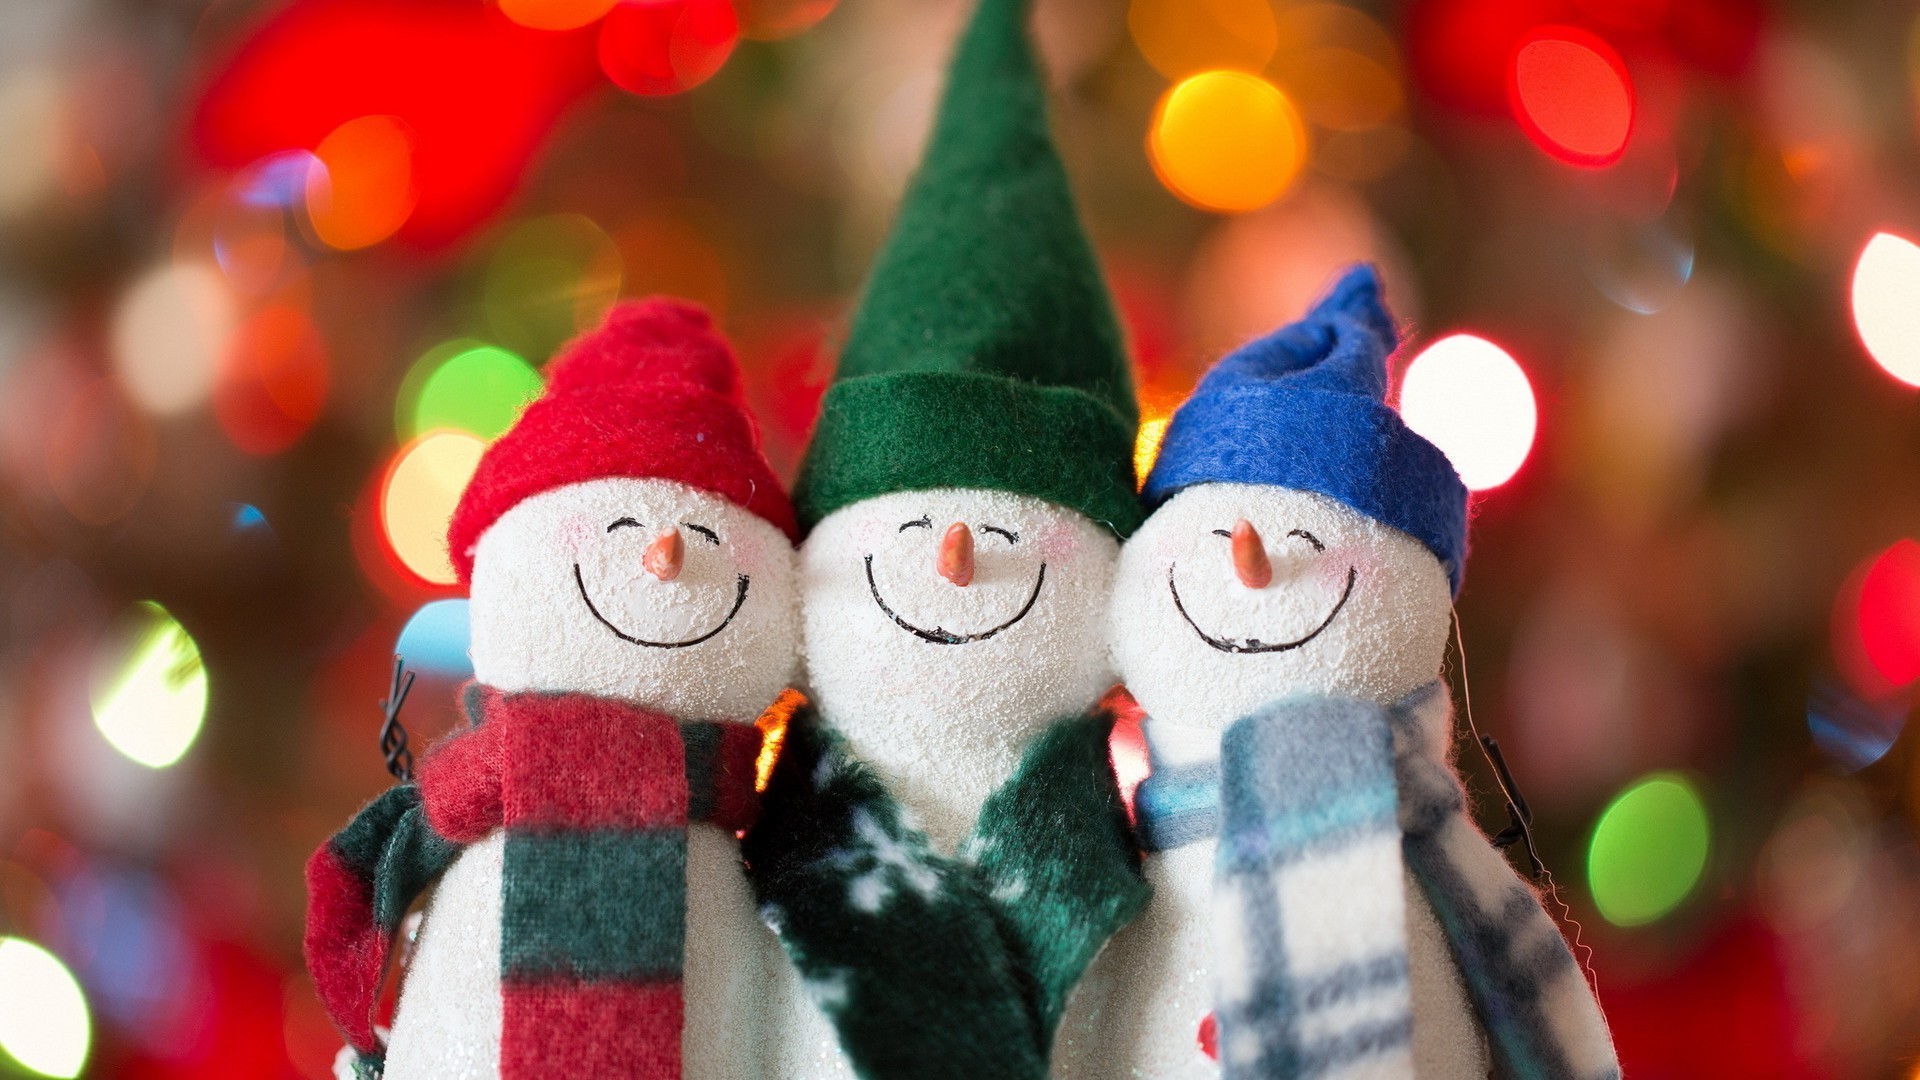 новый год рождество зима праздник украшения цвет удовольствие традиционные ручной работы яркий пестрый игрушка участник мерри фестиваль